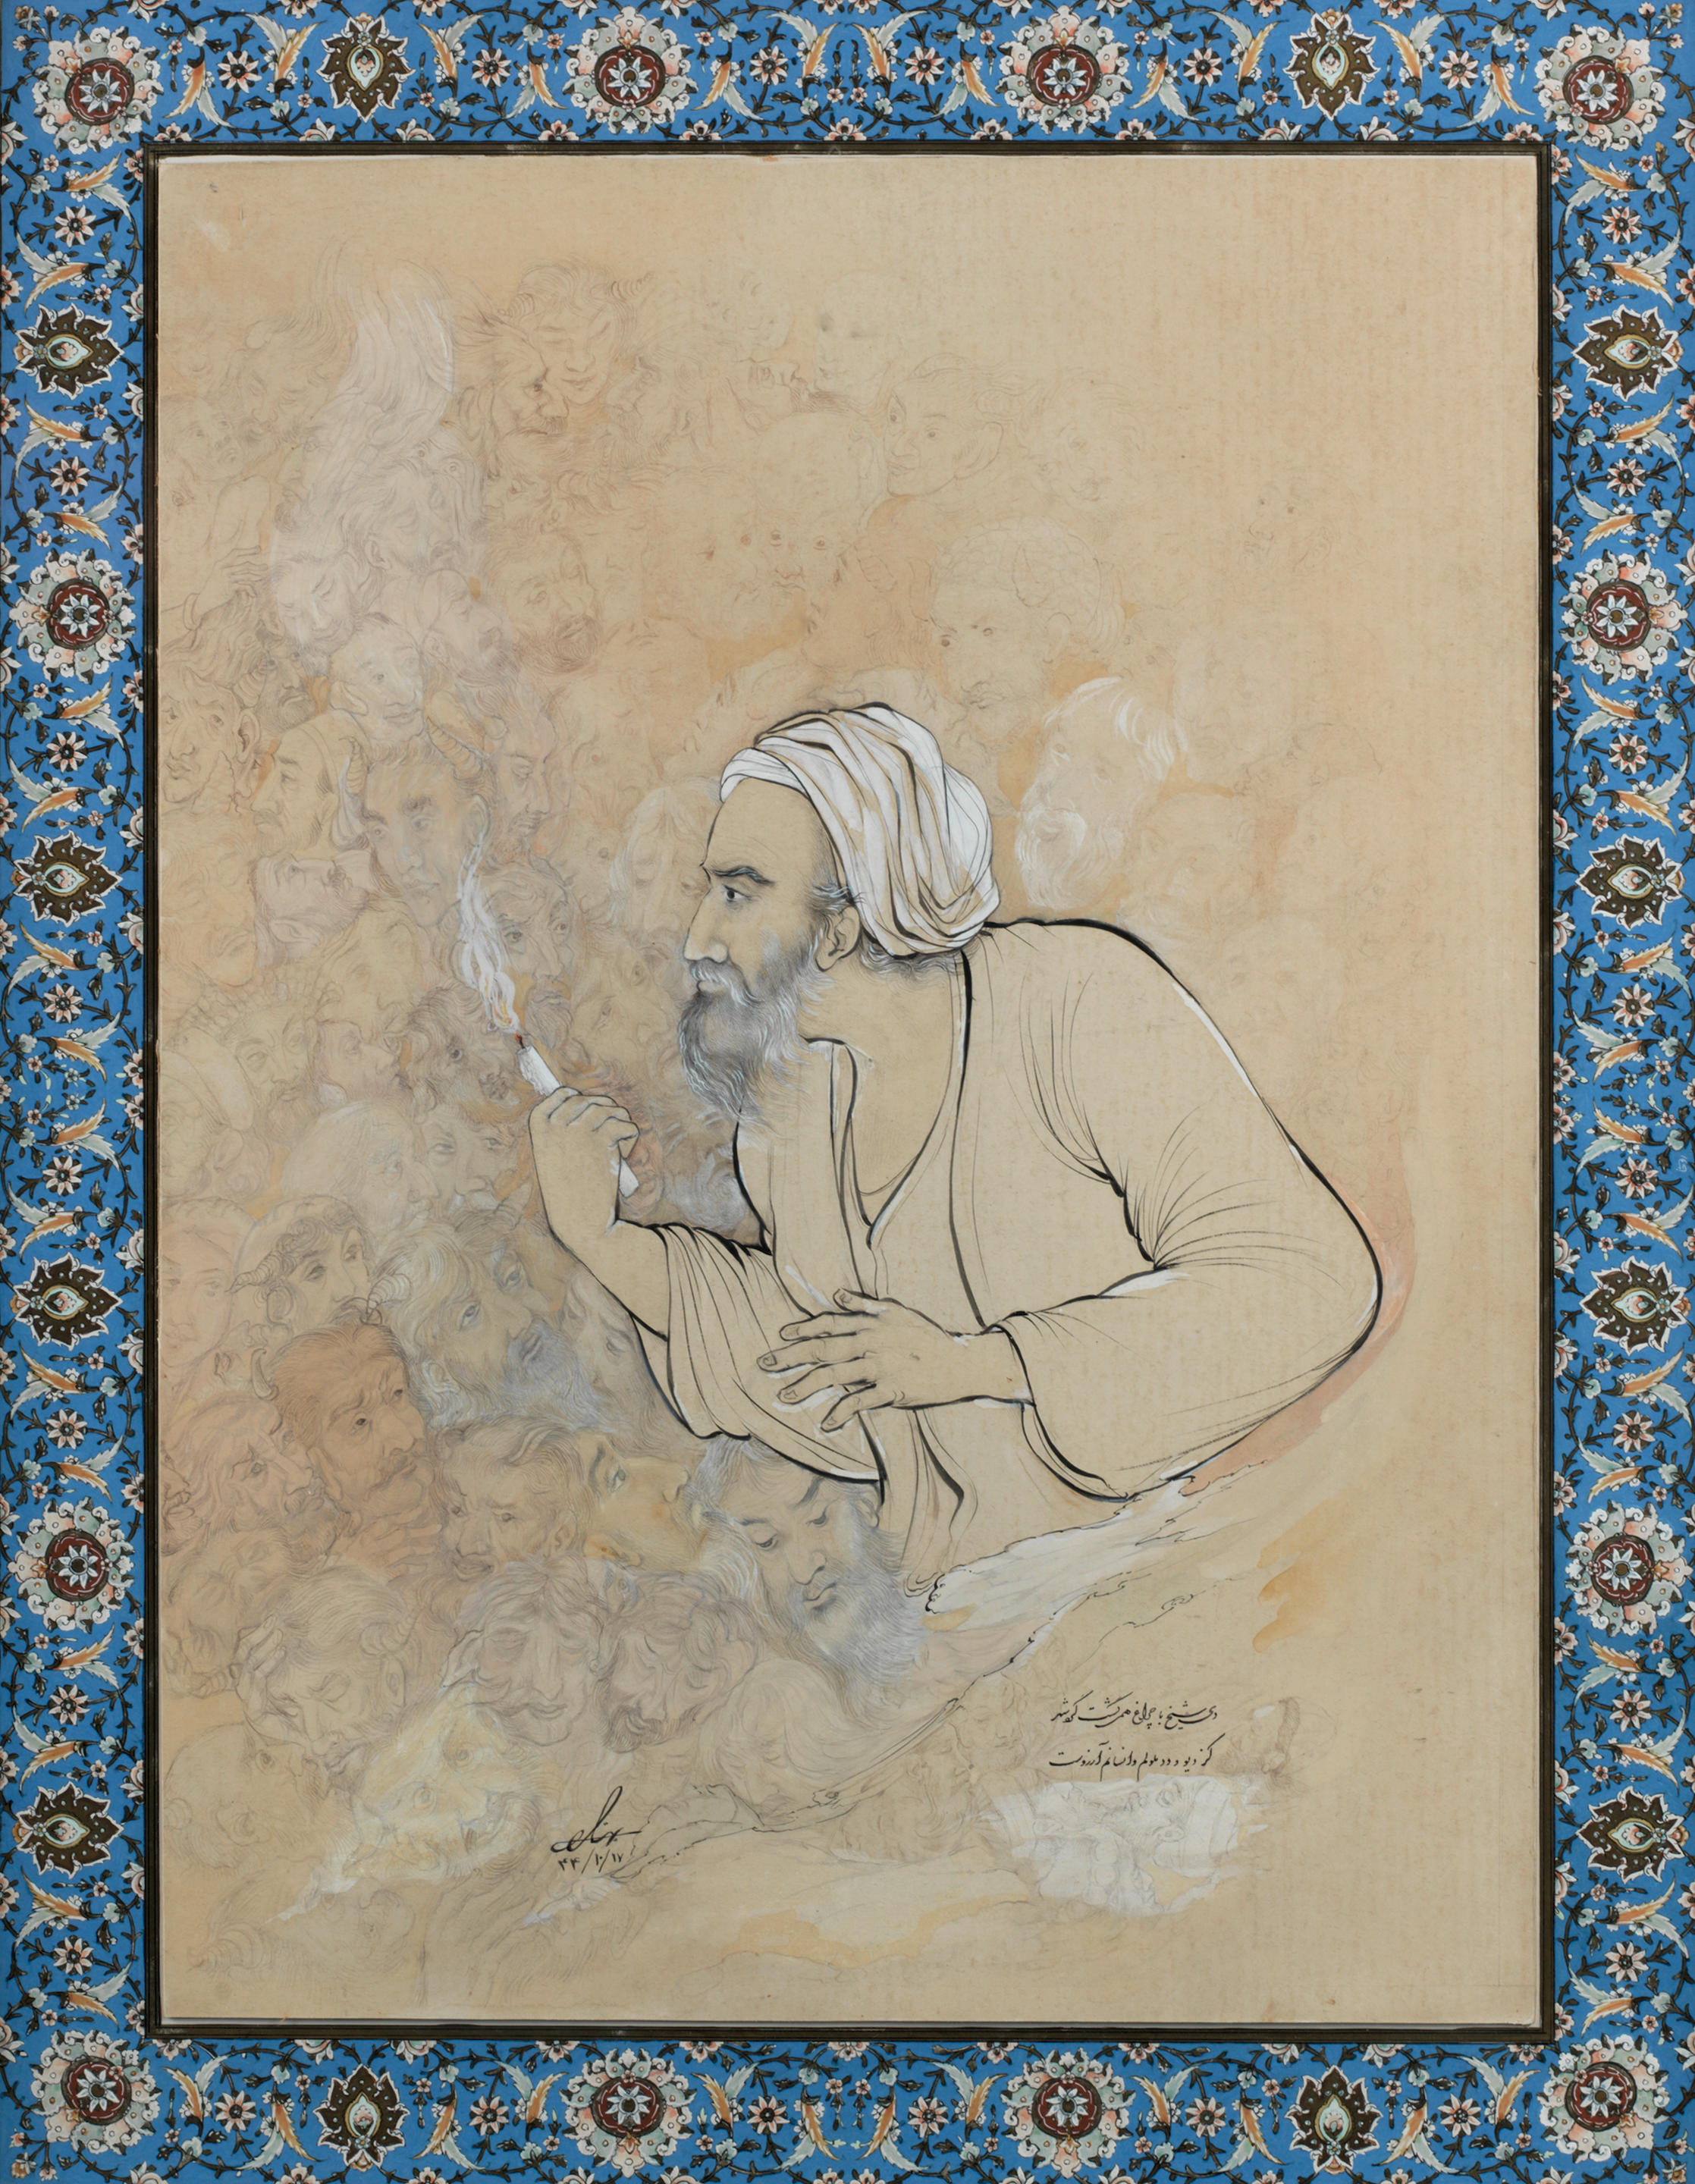 Bonhams Husayn Behzad 1894 1968 An Illustration To The Divan Of Jalal Al Din Muhammad Rumi